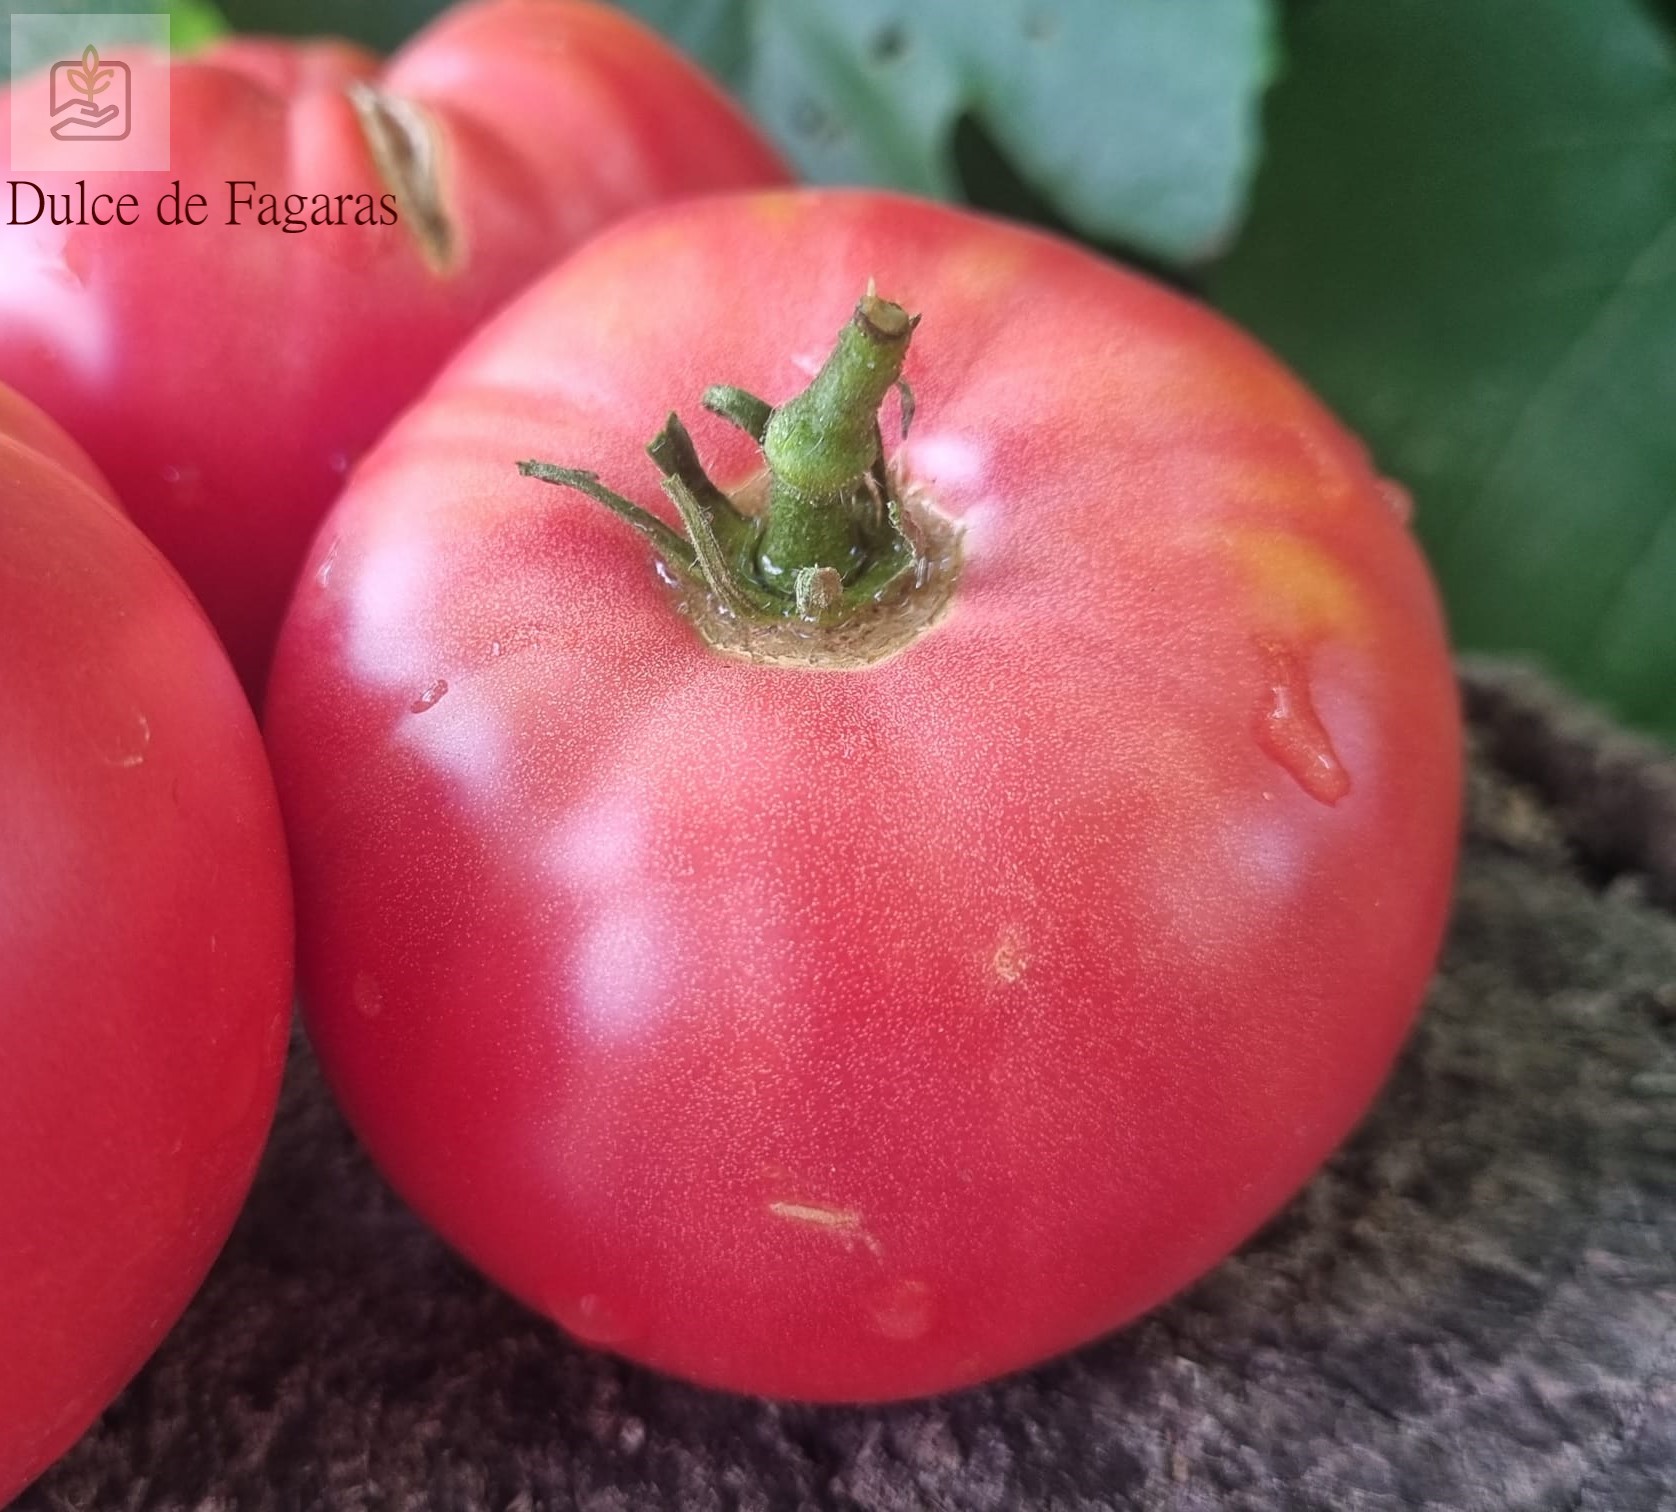 Dulce de Fagaras sună ca un soi delicios de tomate autohtone.